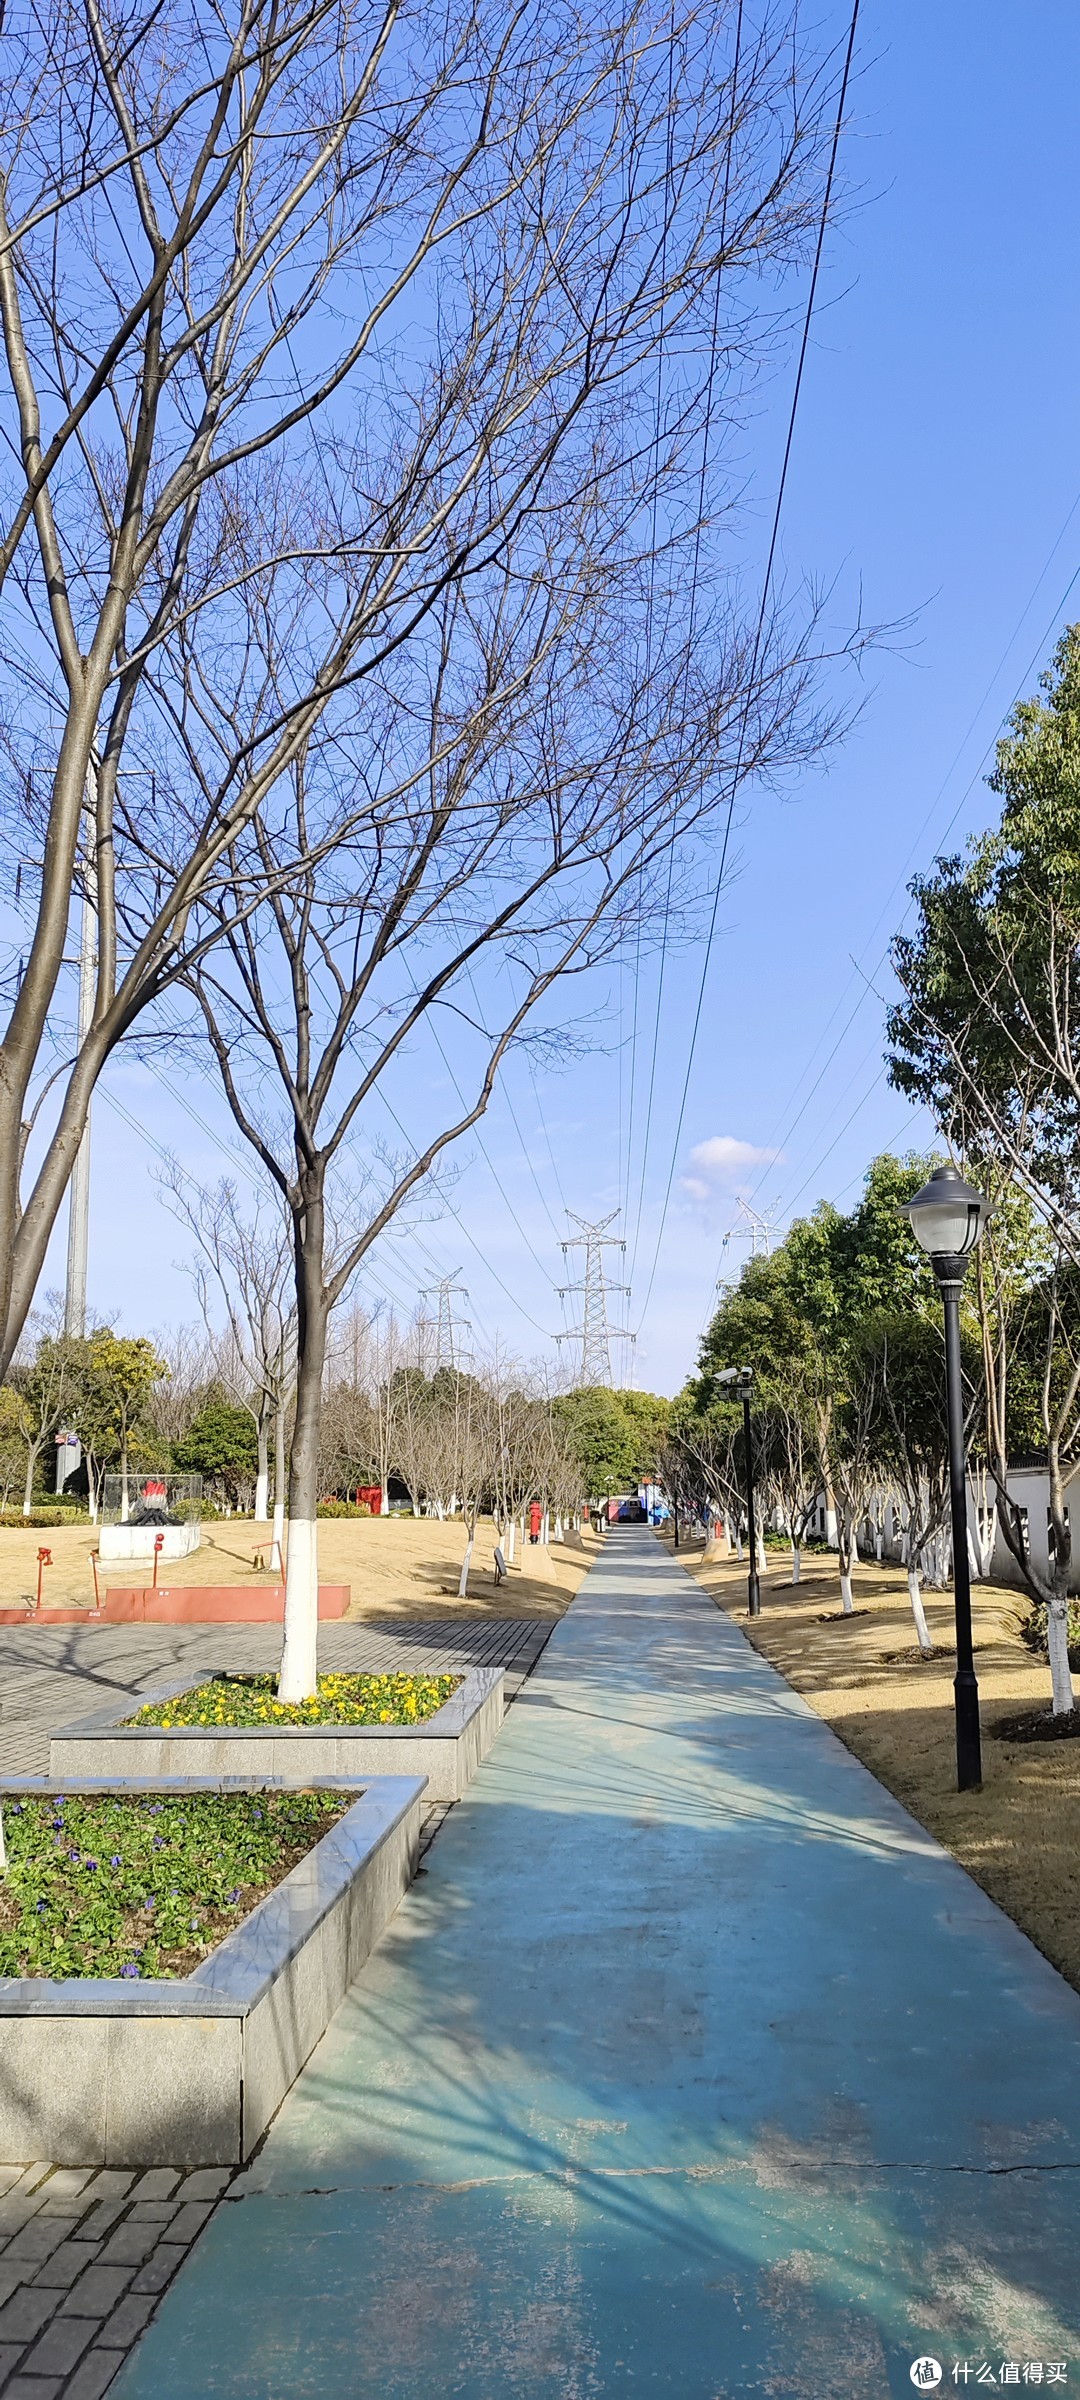 金塔公园/上海市金塔路/首个消防主题公园/位于闵行区颛桥镇北桥片区，以金塔公园为基础改造的特色游乐园